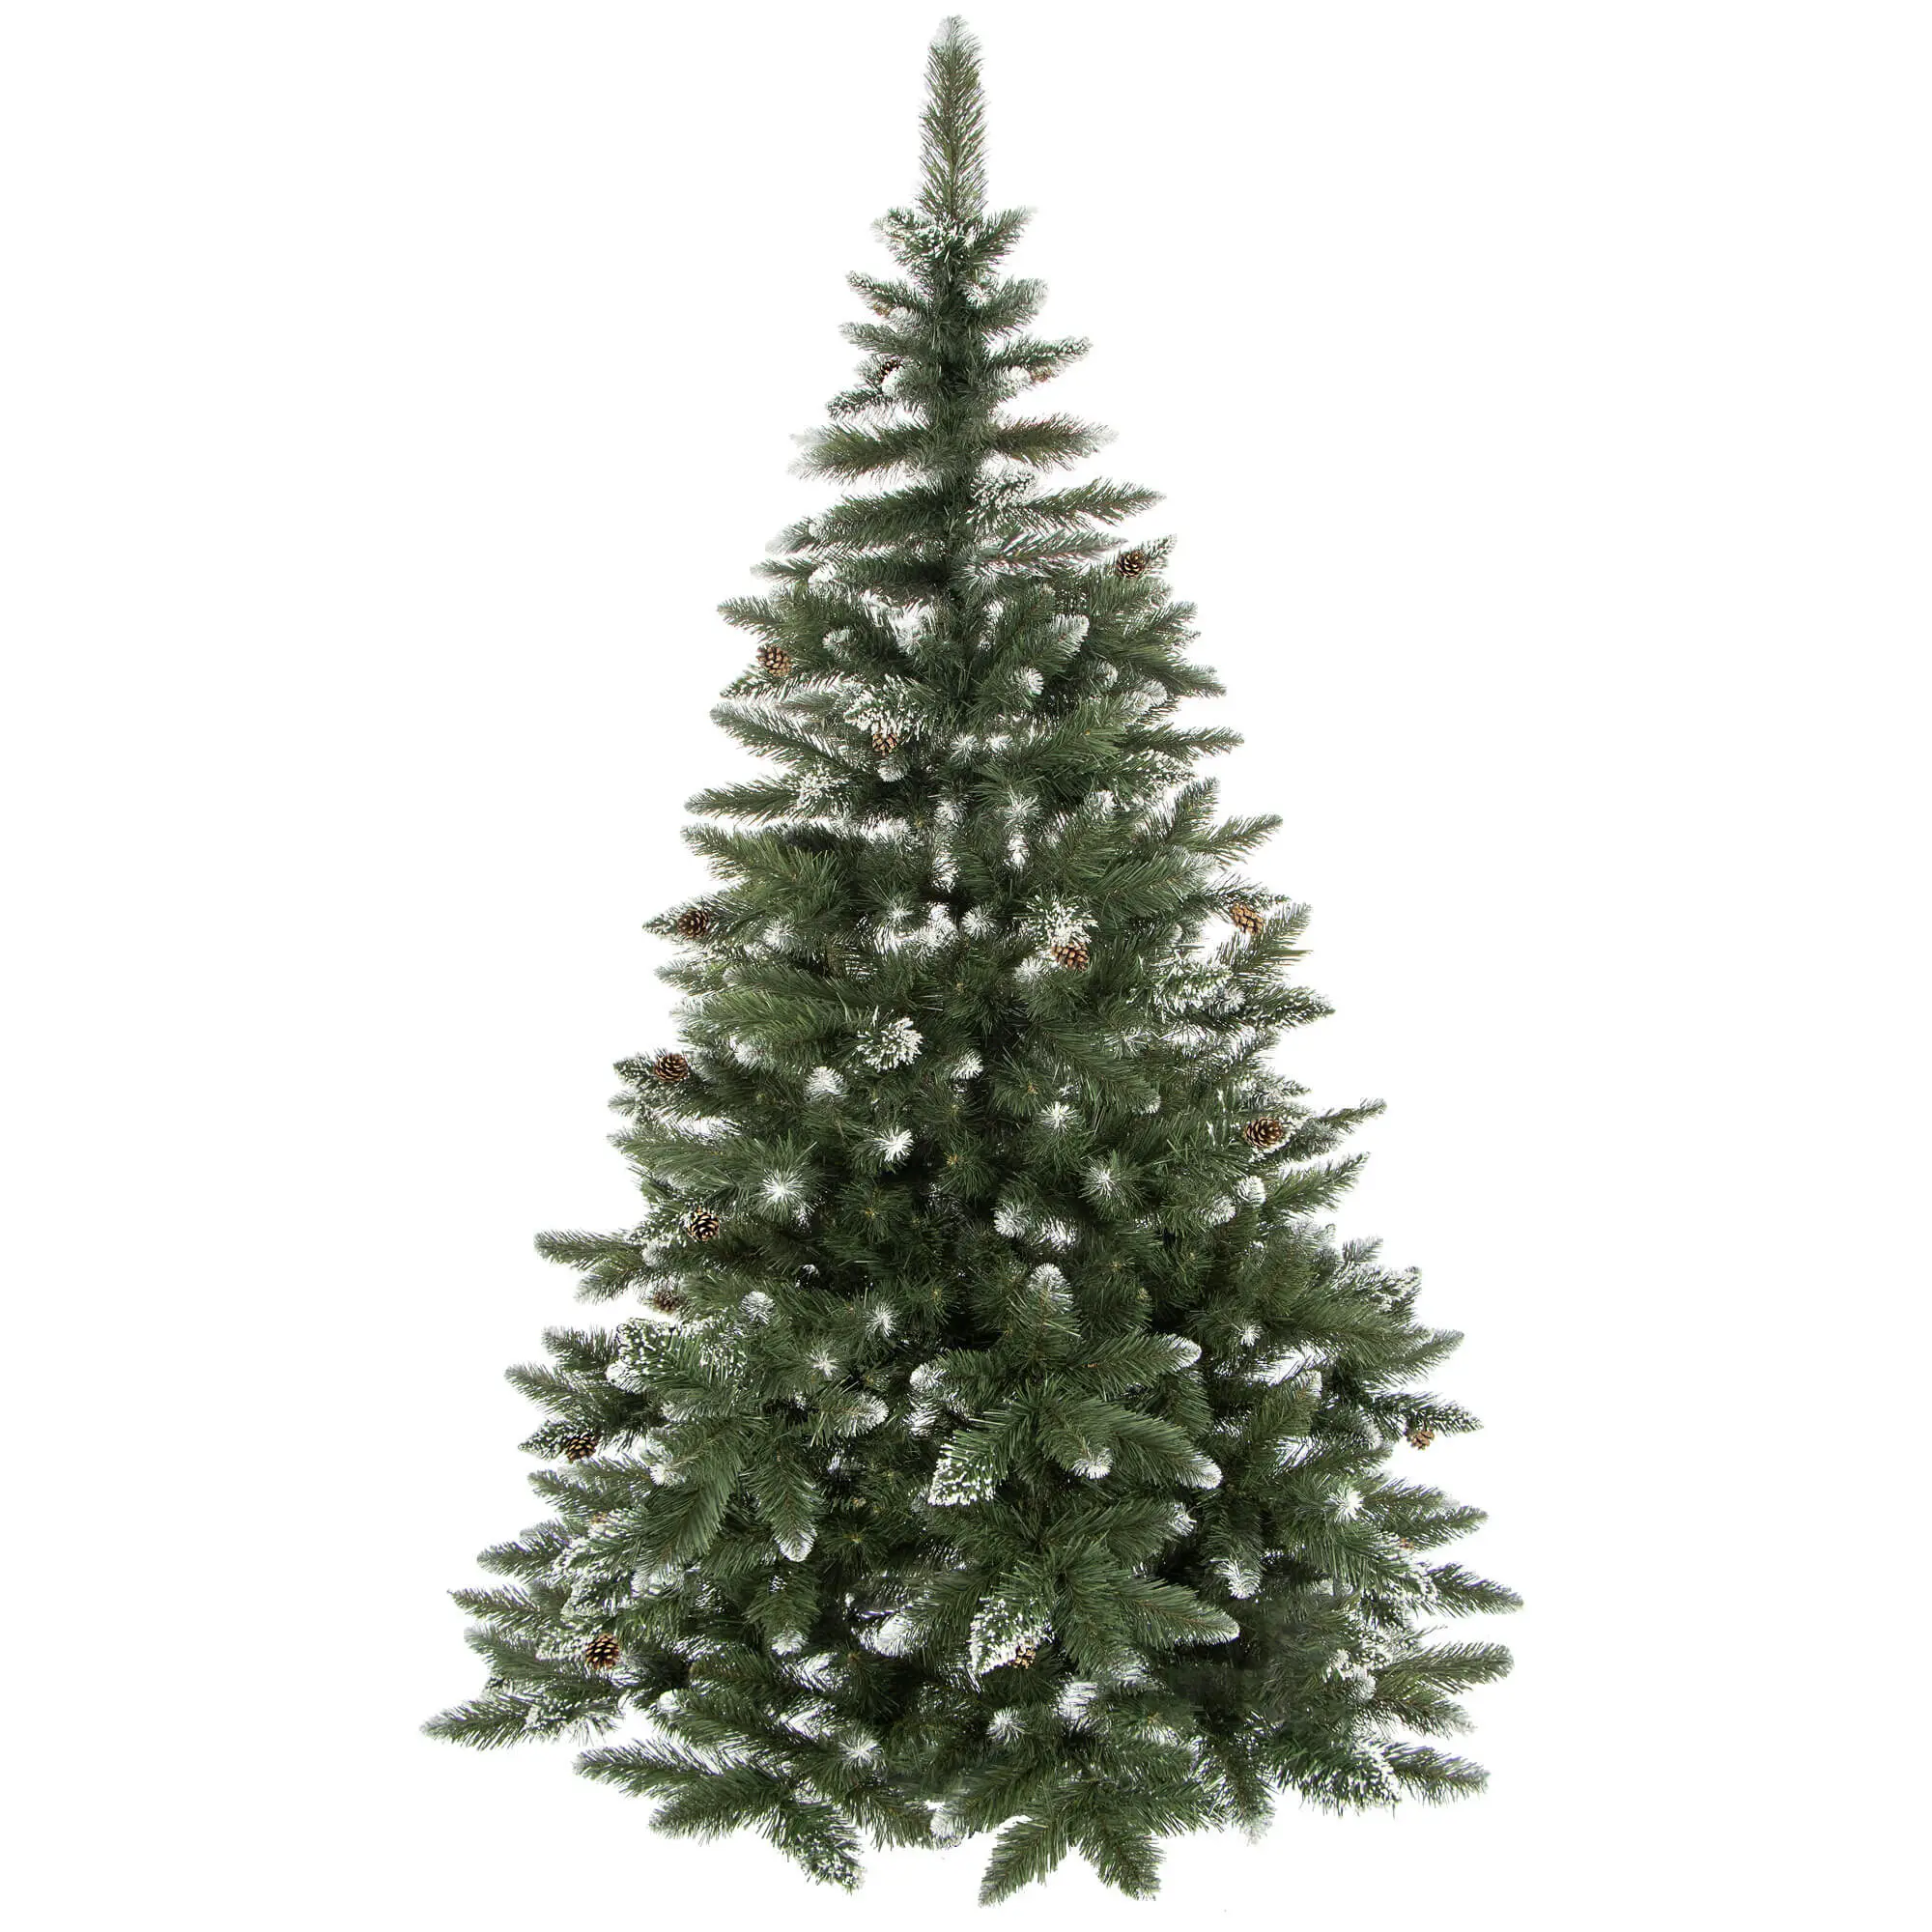 K眉nstlicher Premium-Weihnachtsbaum 150cm